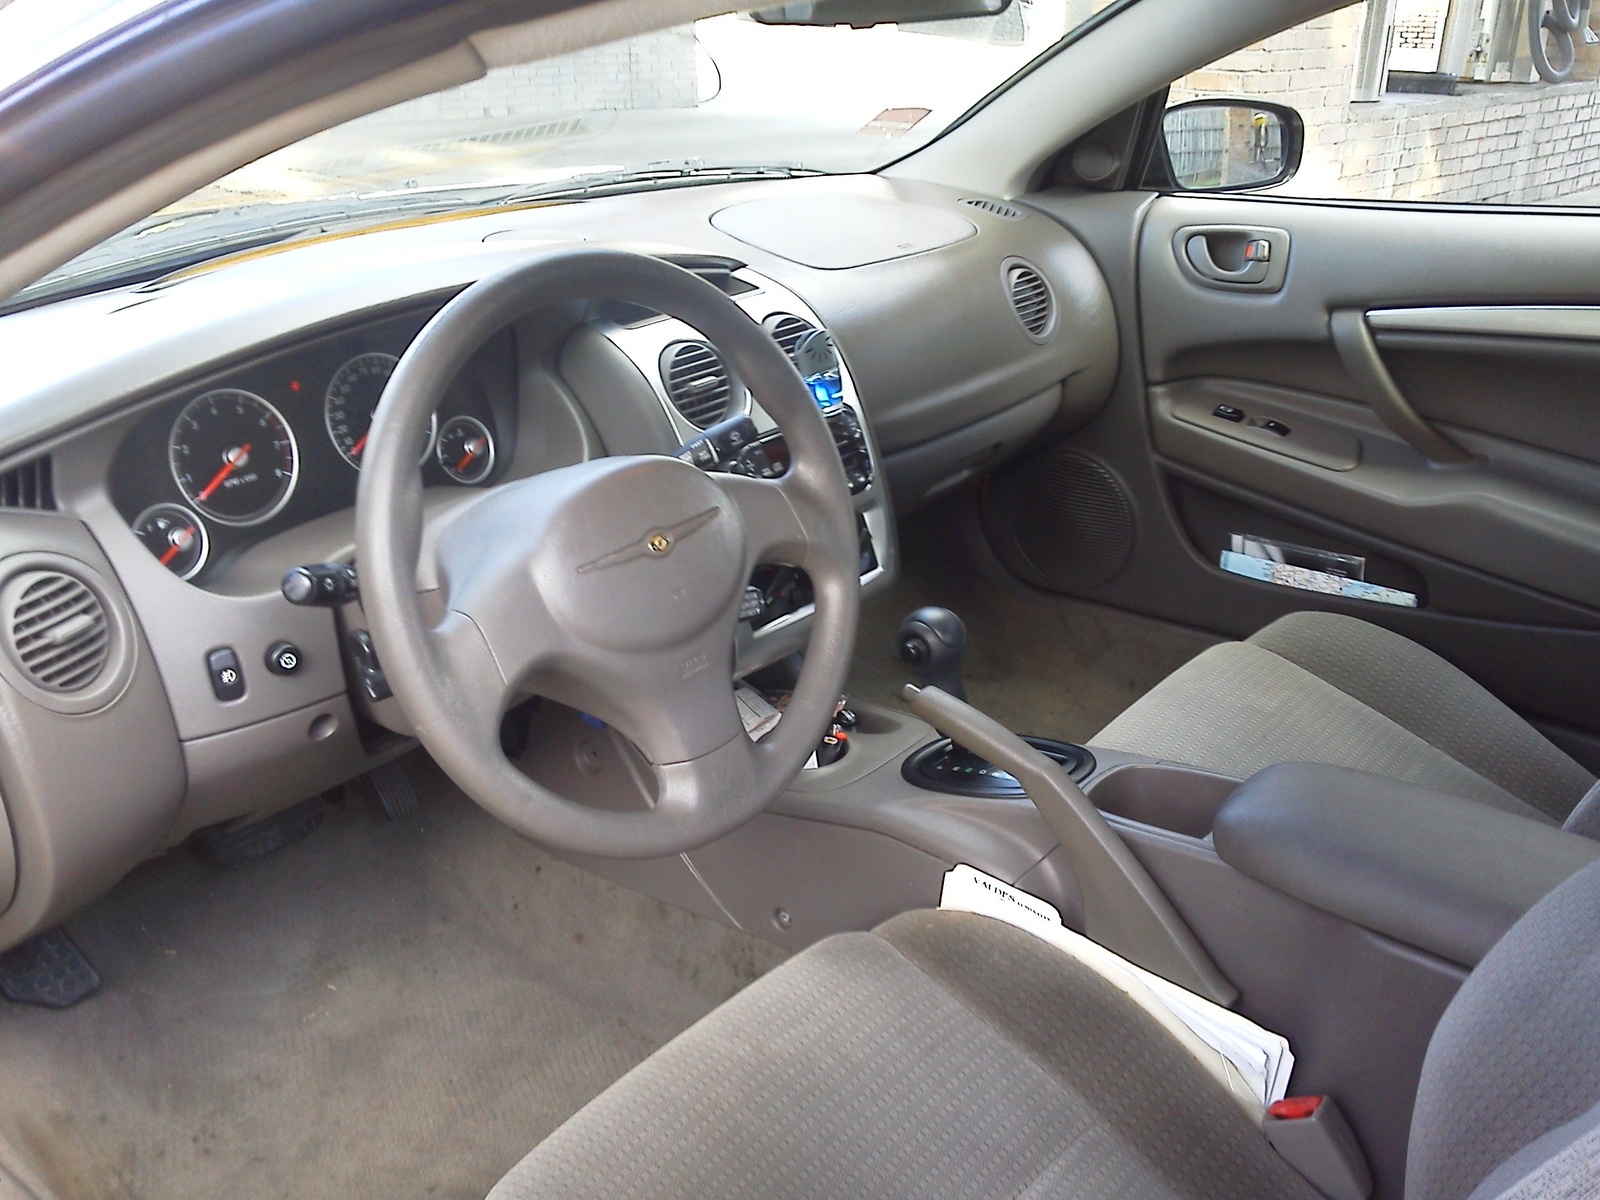 2005 Chrysler Sebring Interior